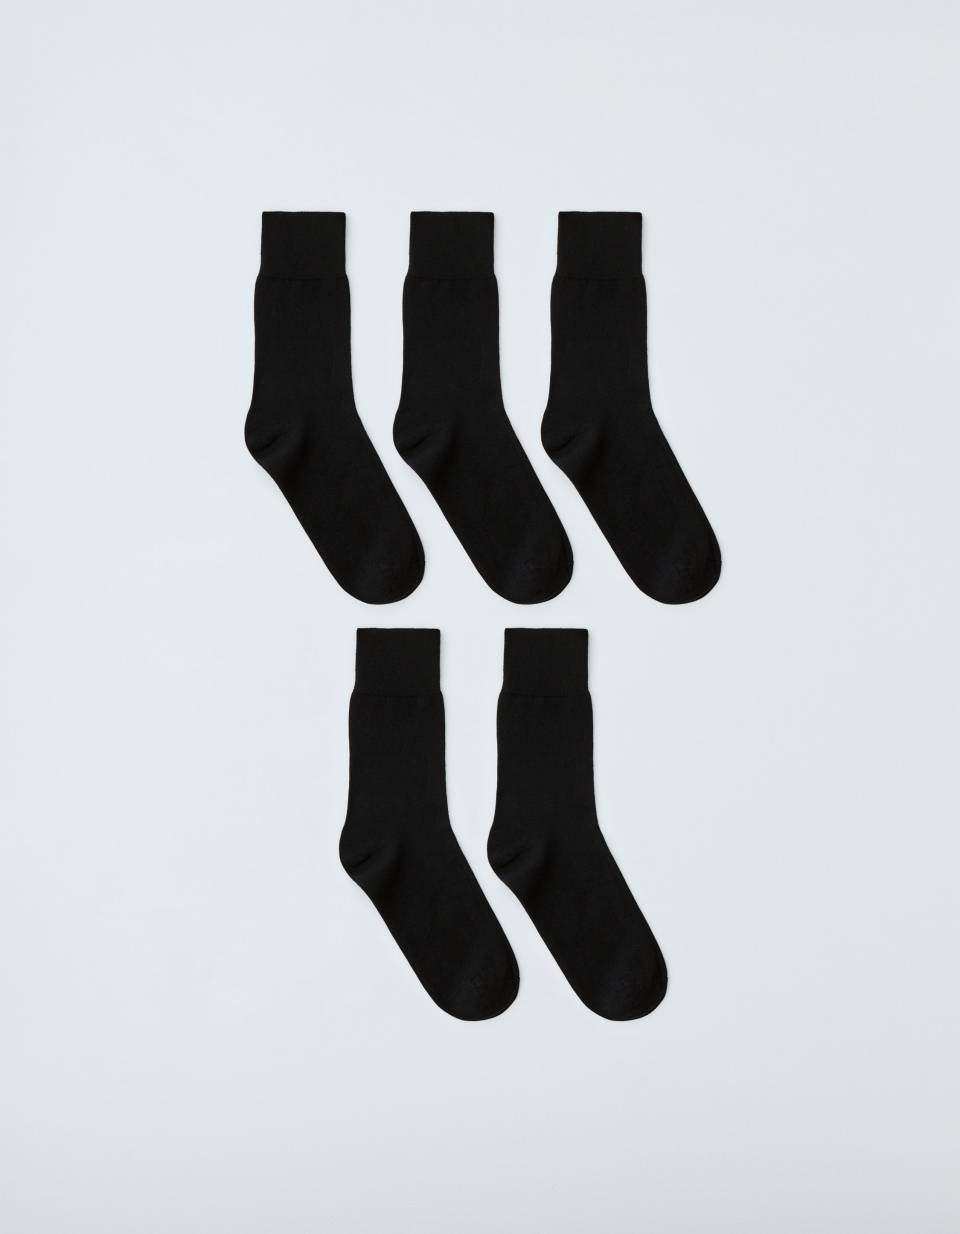 Набор из 5 пар высоких носков